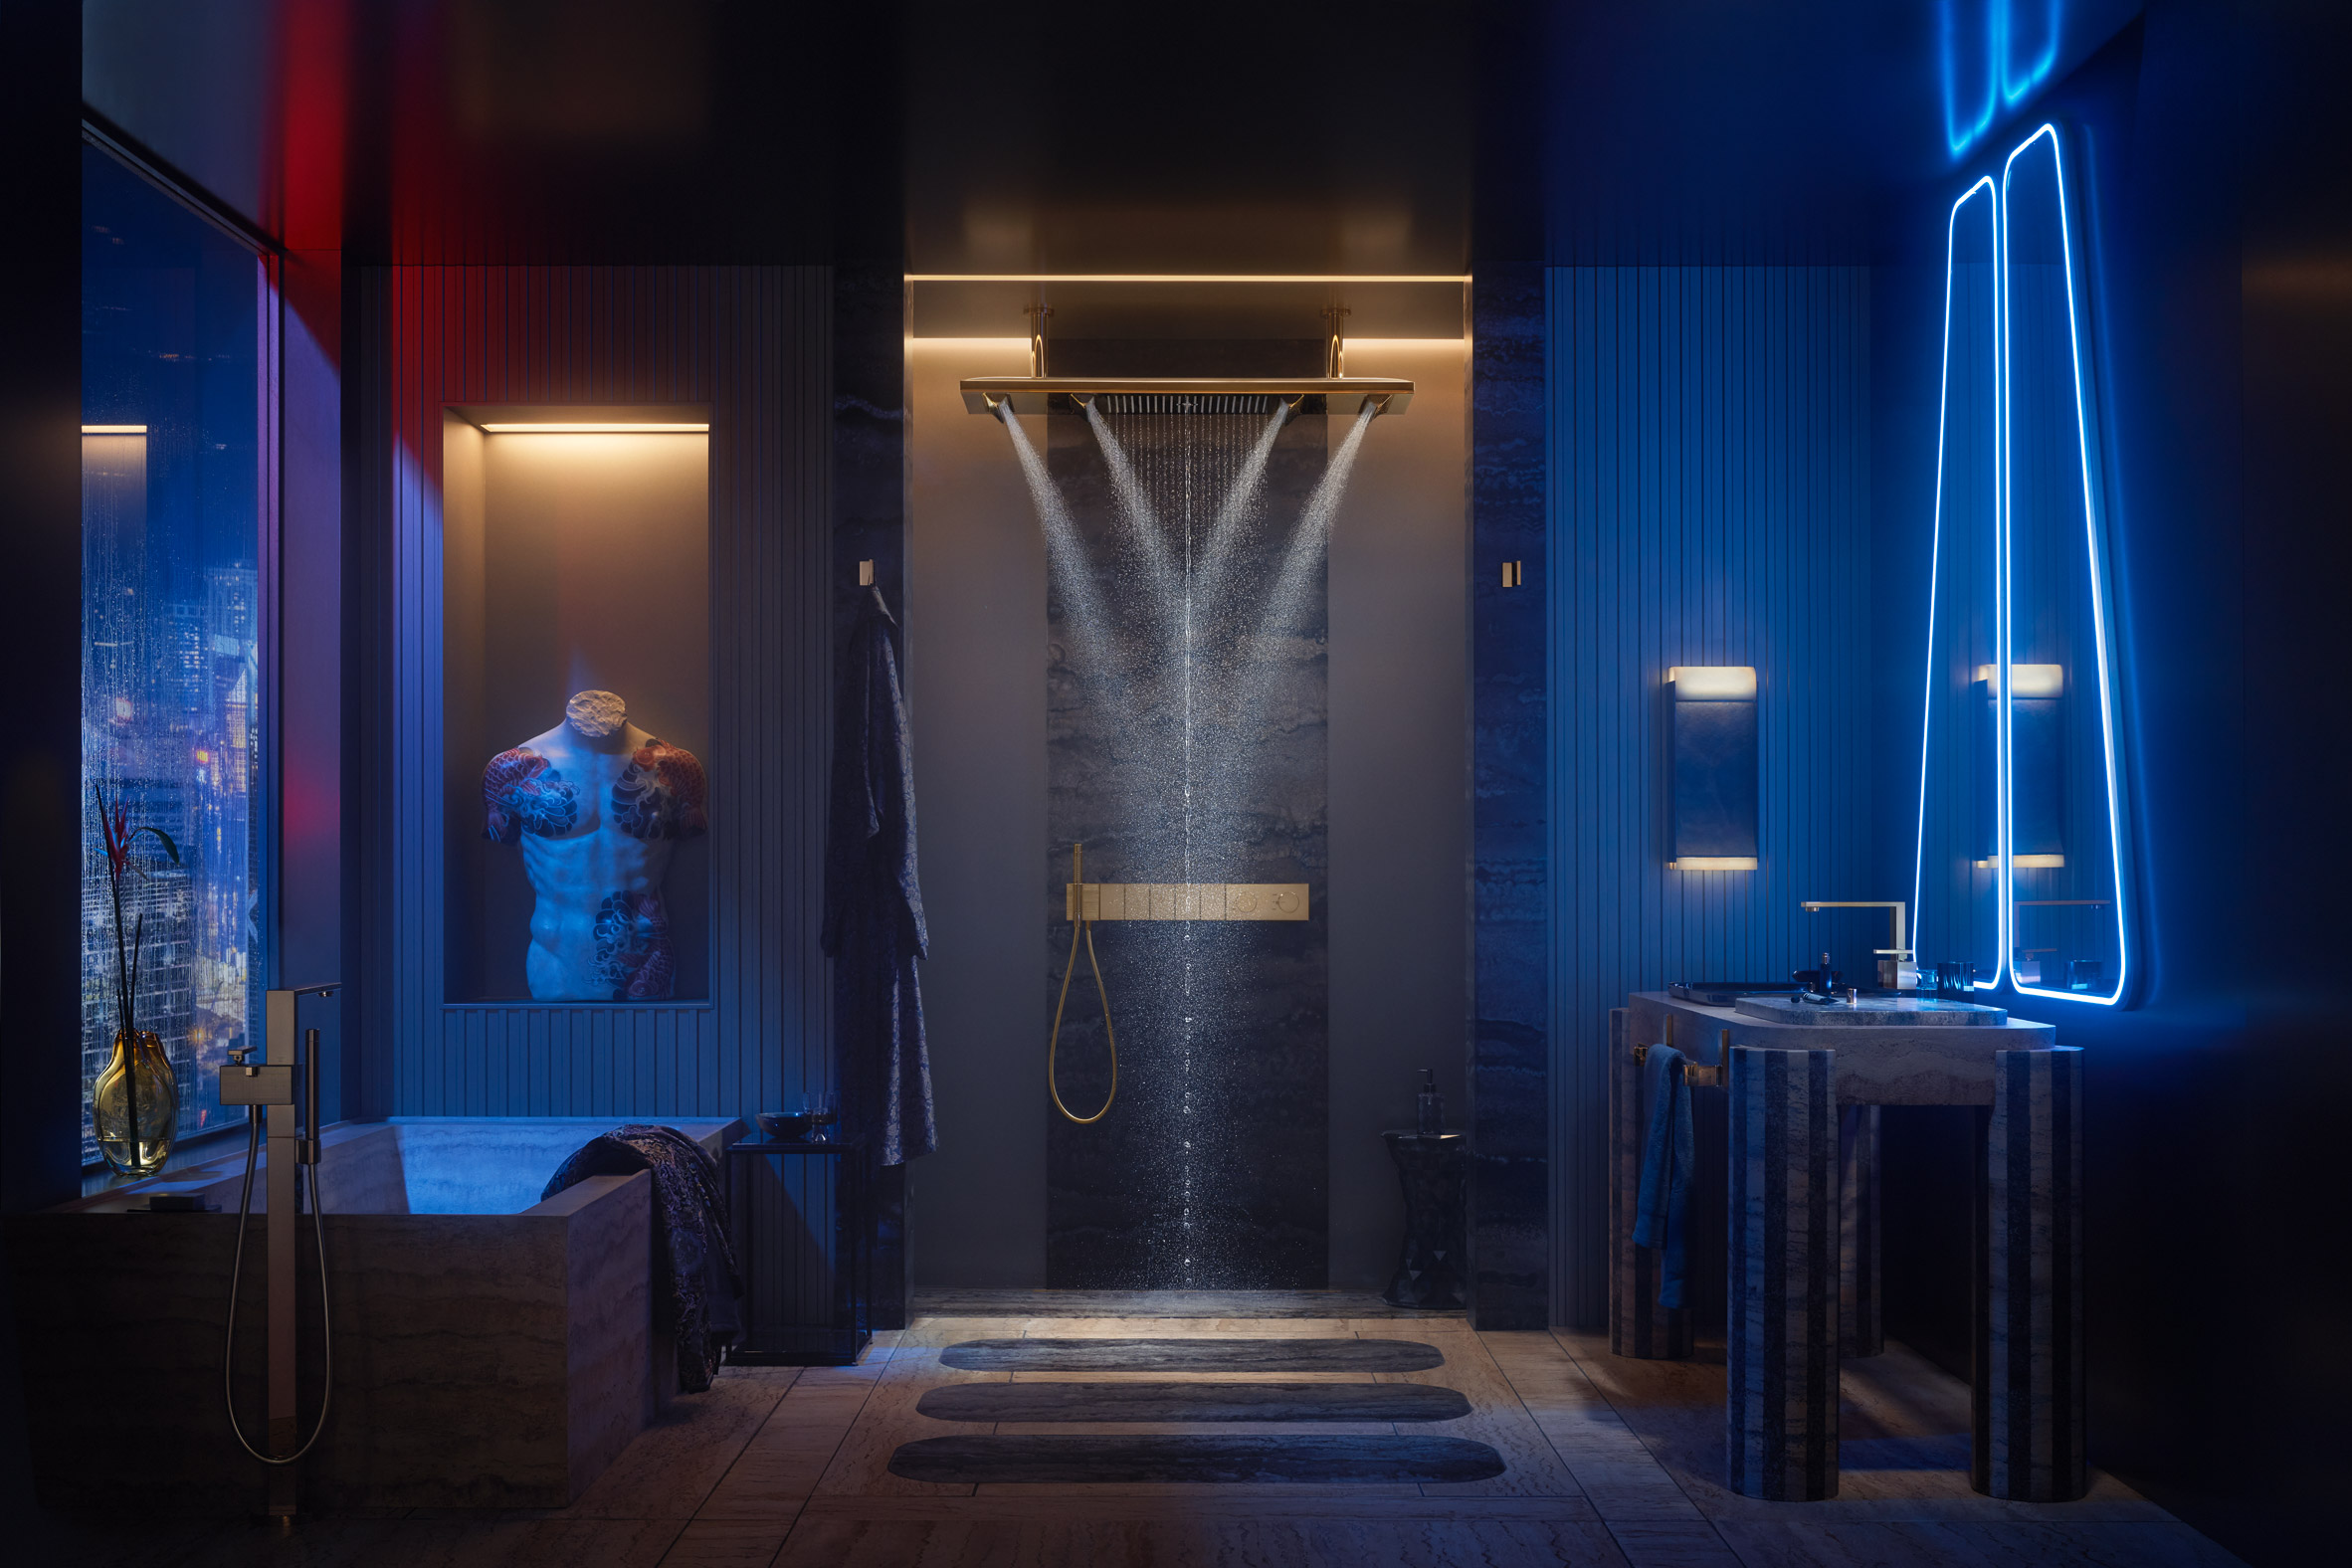 Dark, neon-lit bathroom concept by Tristan Auer